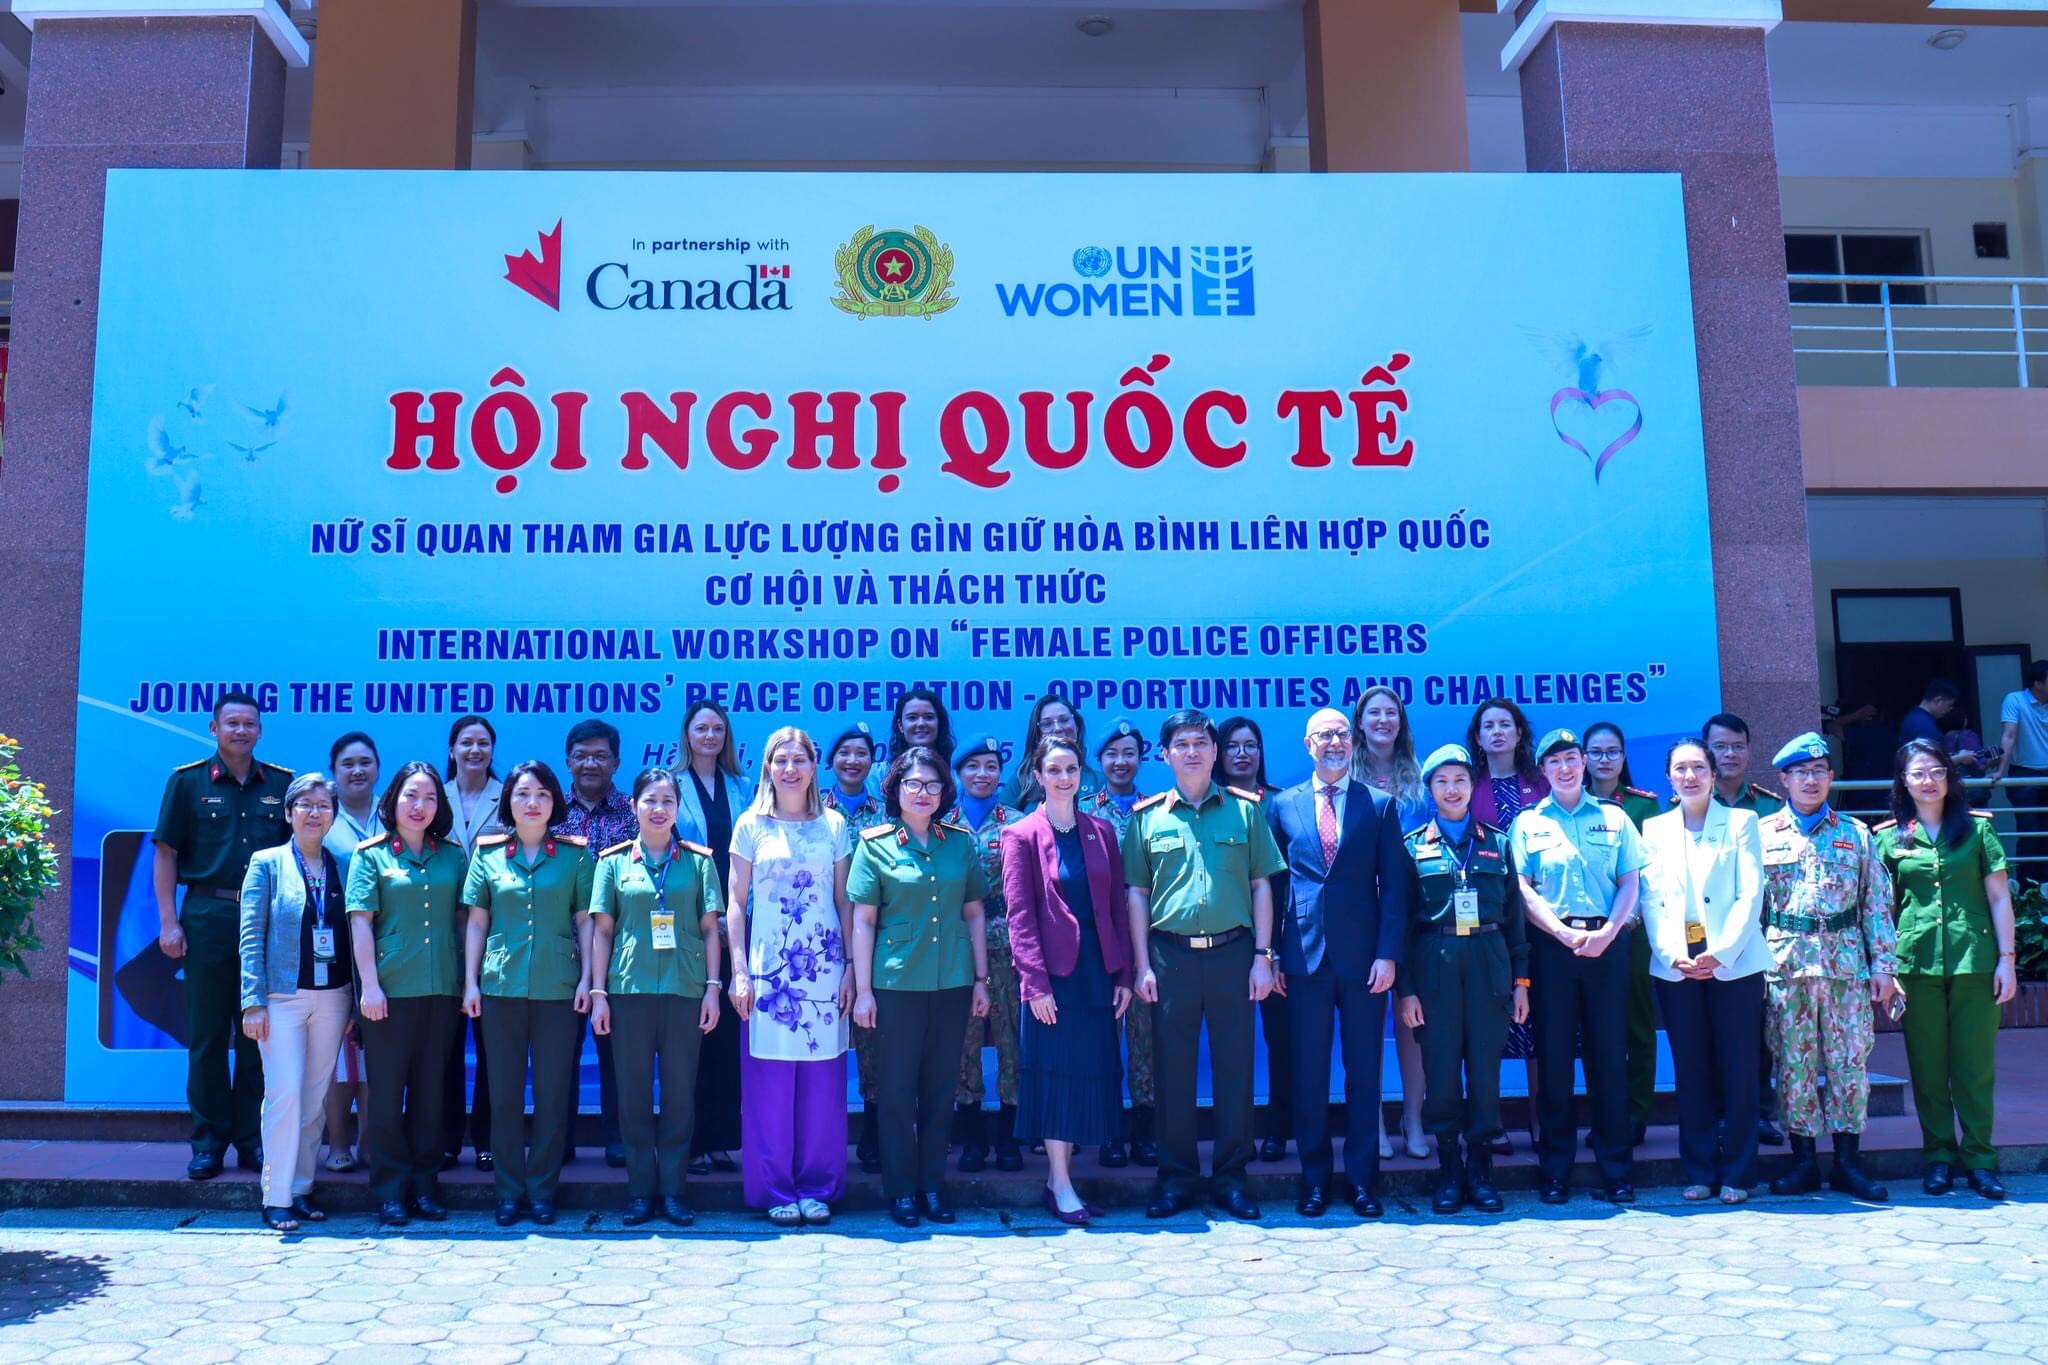 Các nữ chiến sĩ mũ nồi xanh tham dự và phát biểu tại Hội nghị quốc tế "Nữ sĩ quan công an nhân dân tham gia các hoạt động gìn giữ hòa bình Liên hợp quốc - Cơ hội và thách thức"